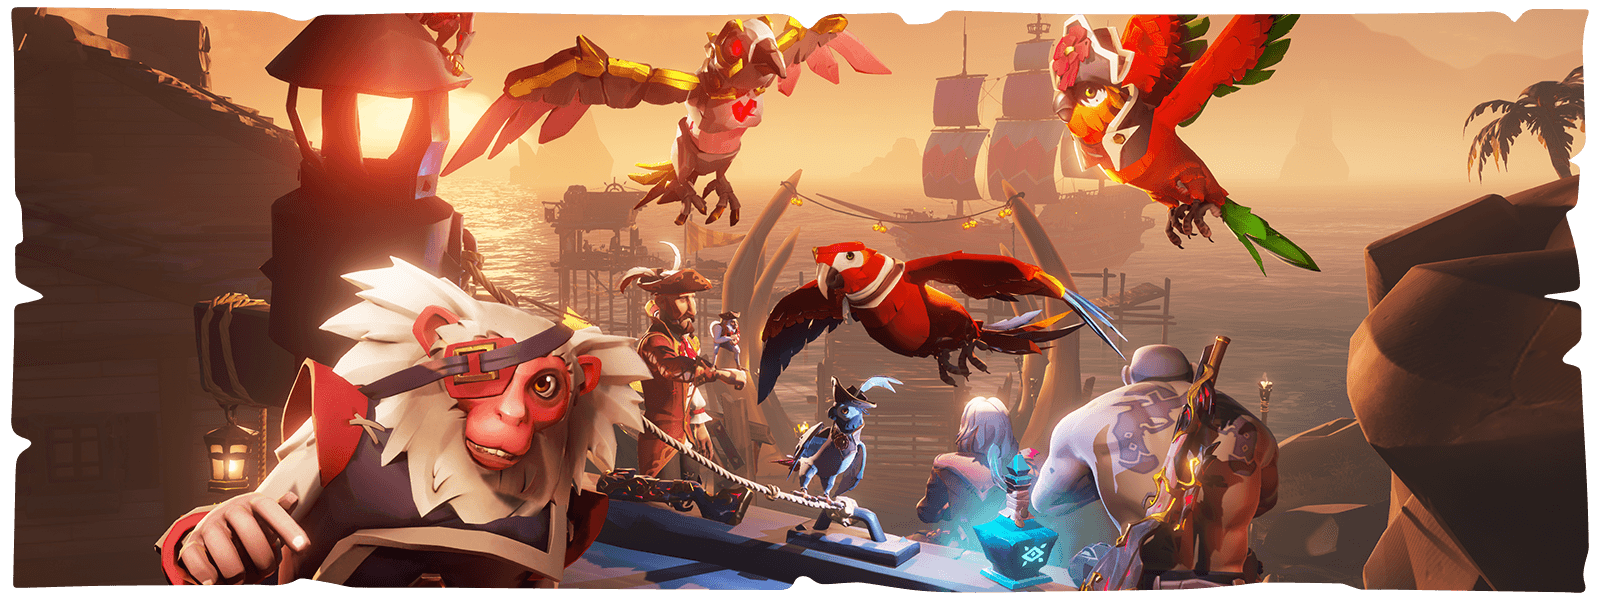 港の前に佇む「Sea of Thieves」 のキャラクター、オウム、サル